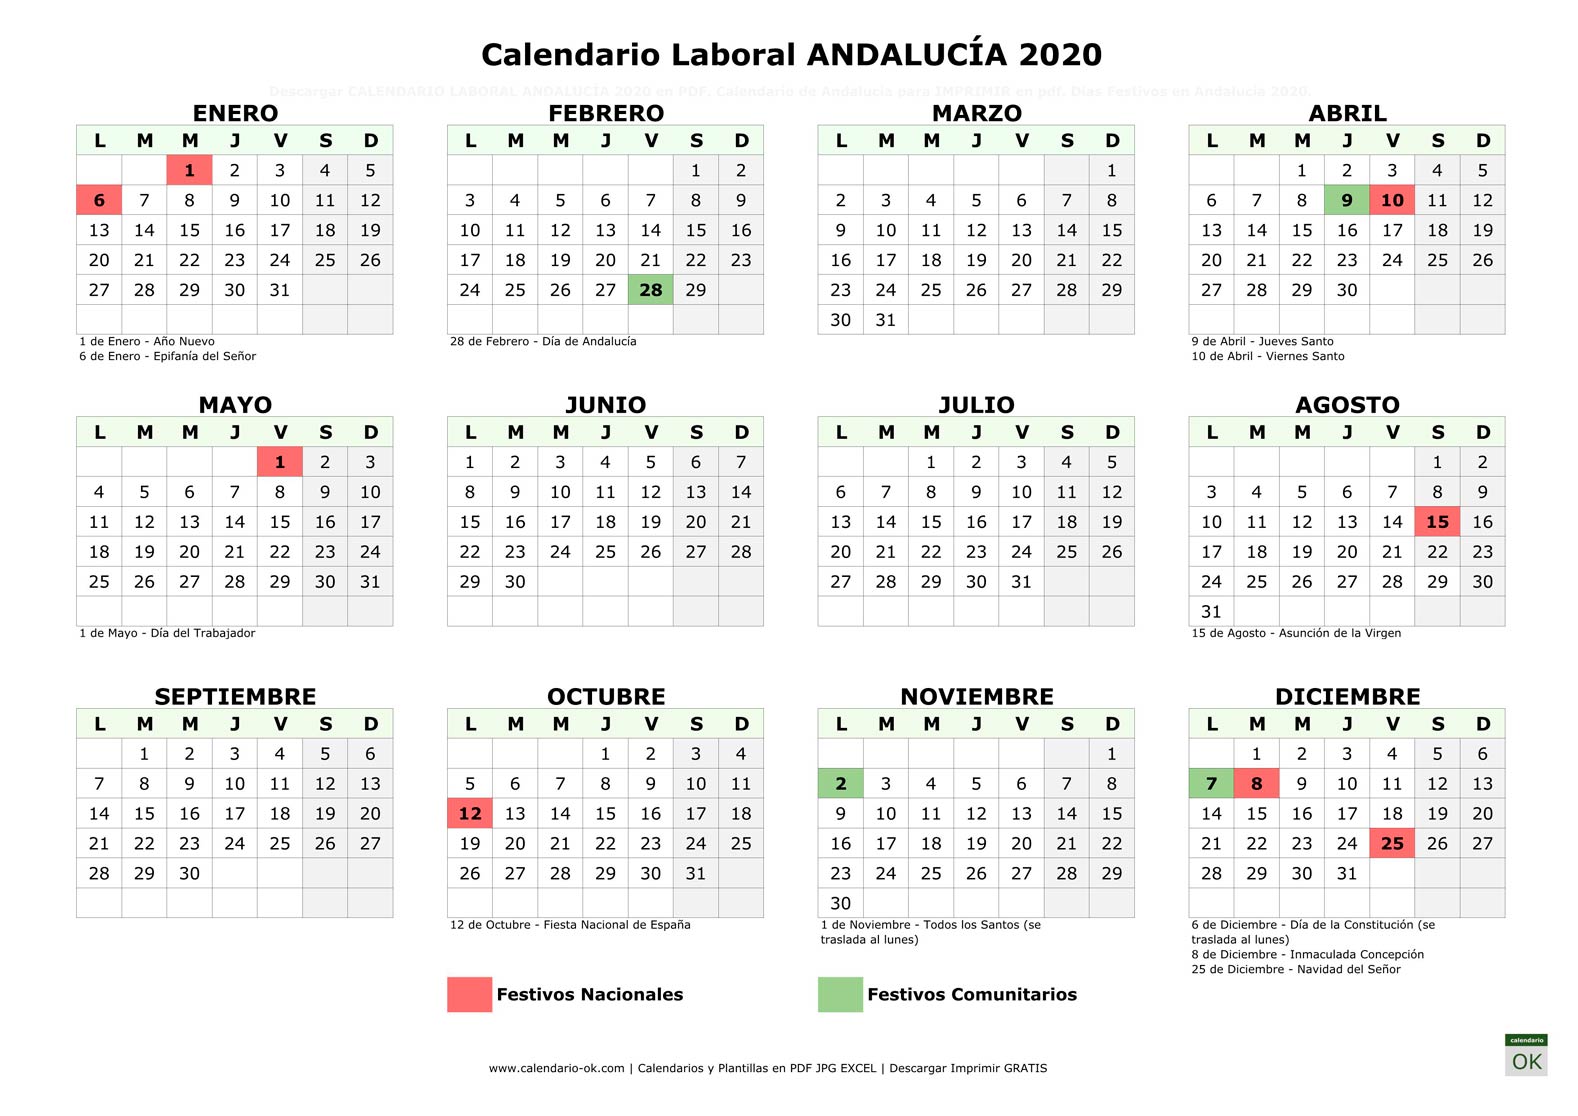 Calendario Laboral ANDALUCÍA 2020 horizontal